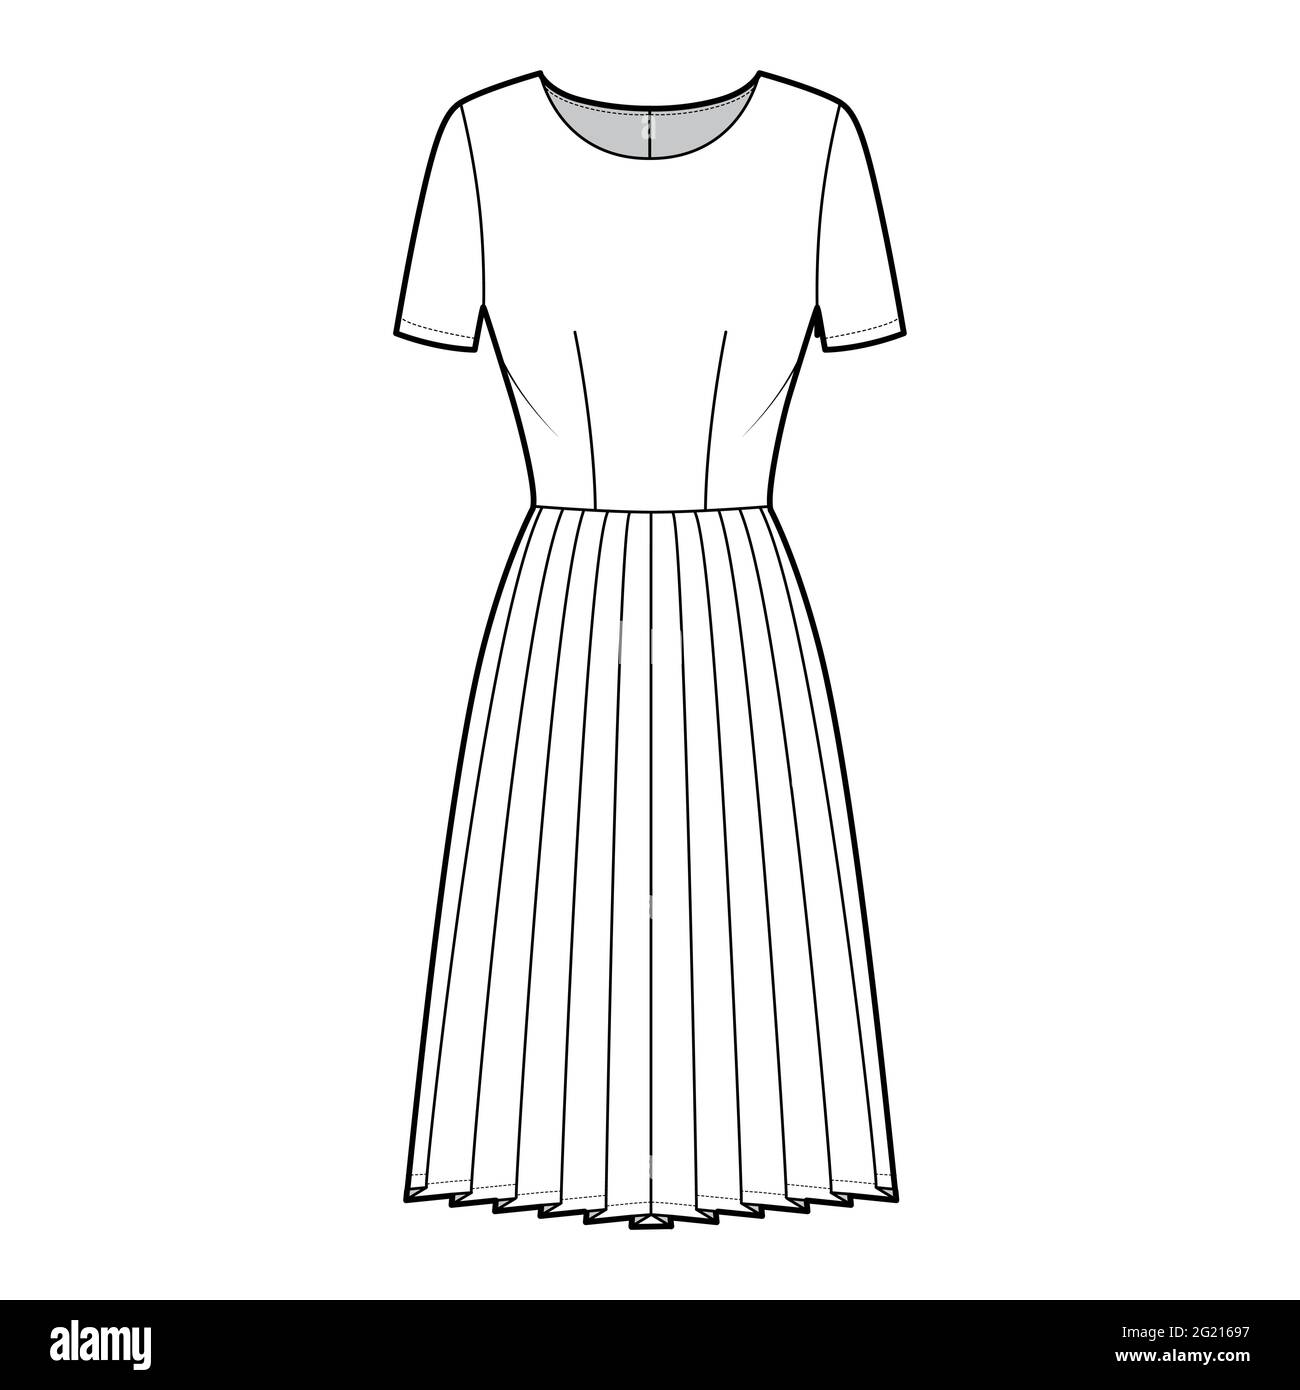 Short white skirt Stock Vector Images - Alamy